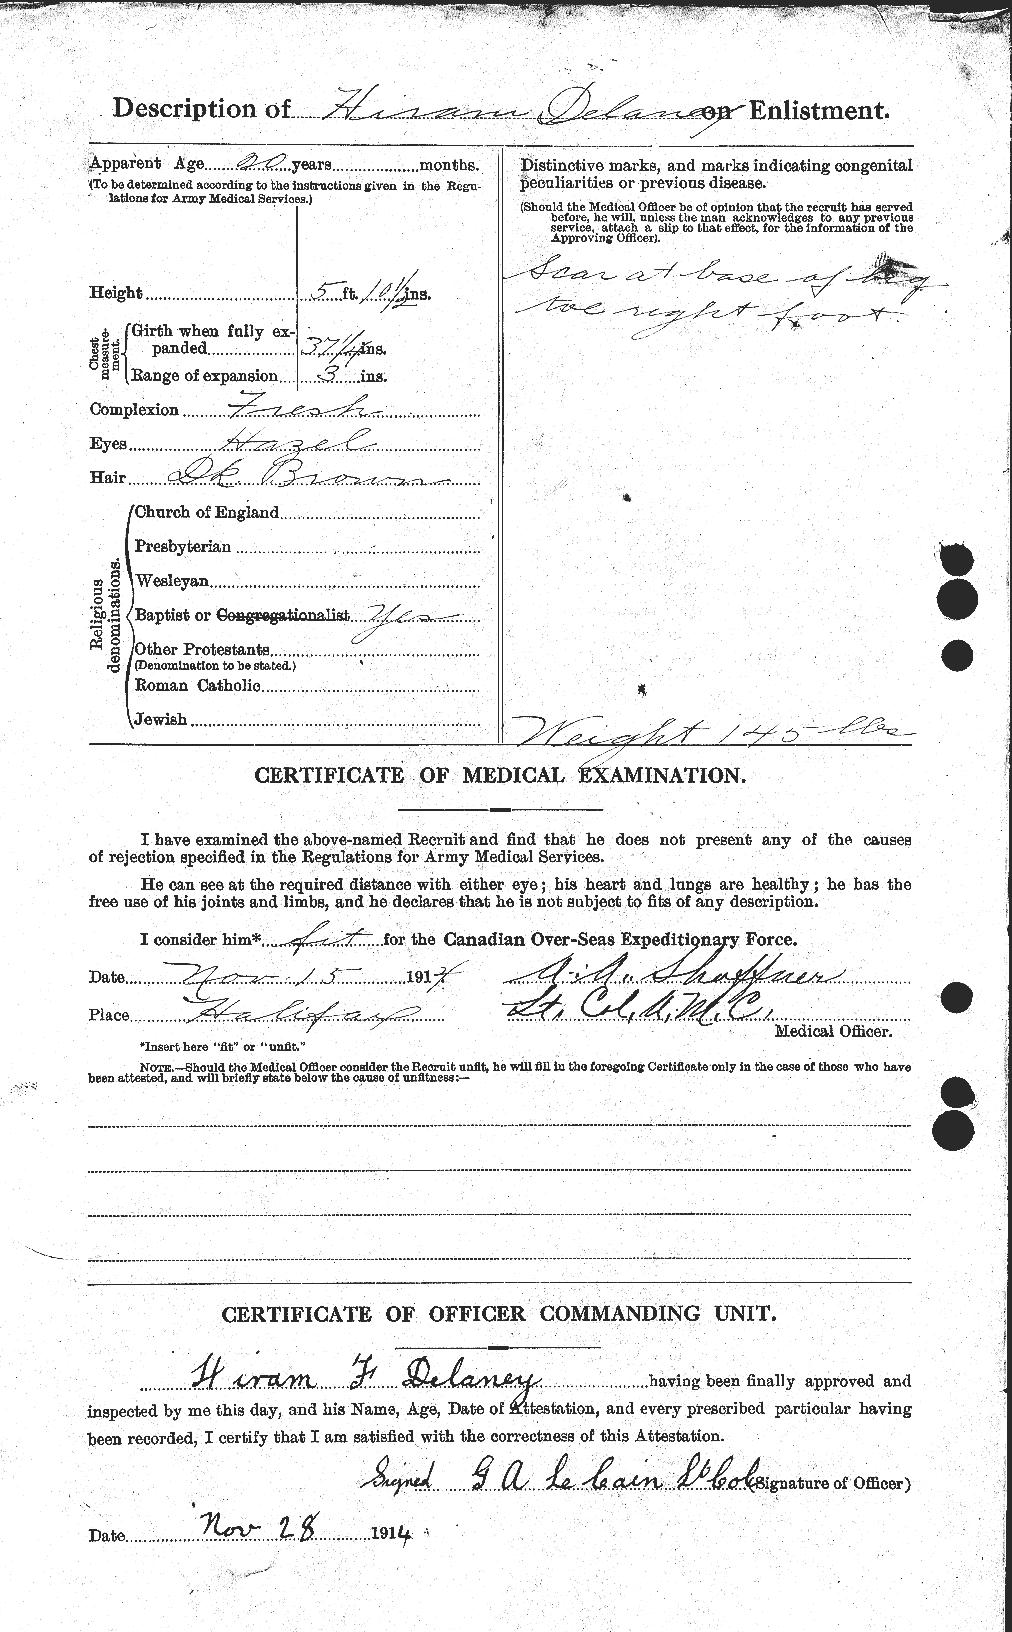 Dossiers du Personnel de la Première Guerre mondiale - CEC 285472b